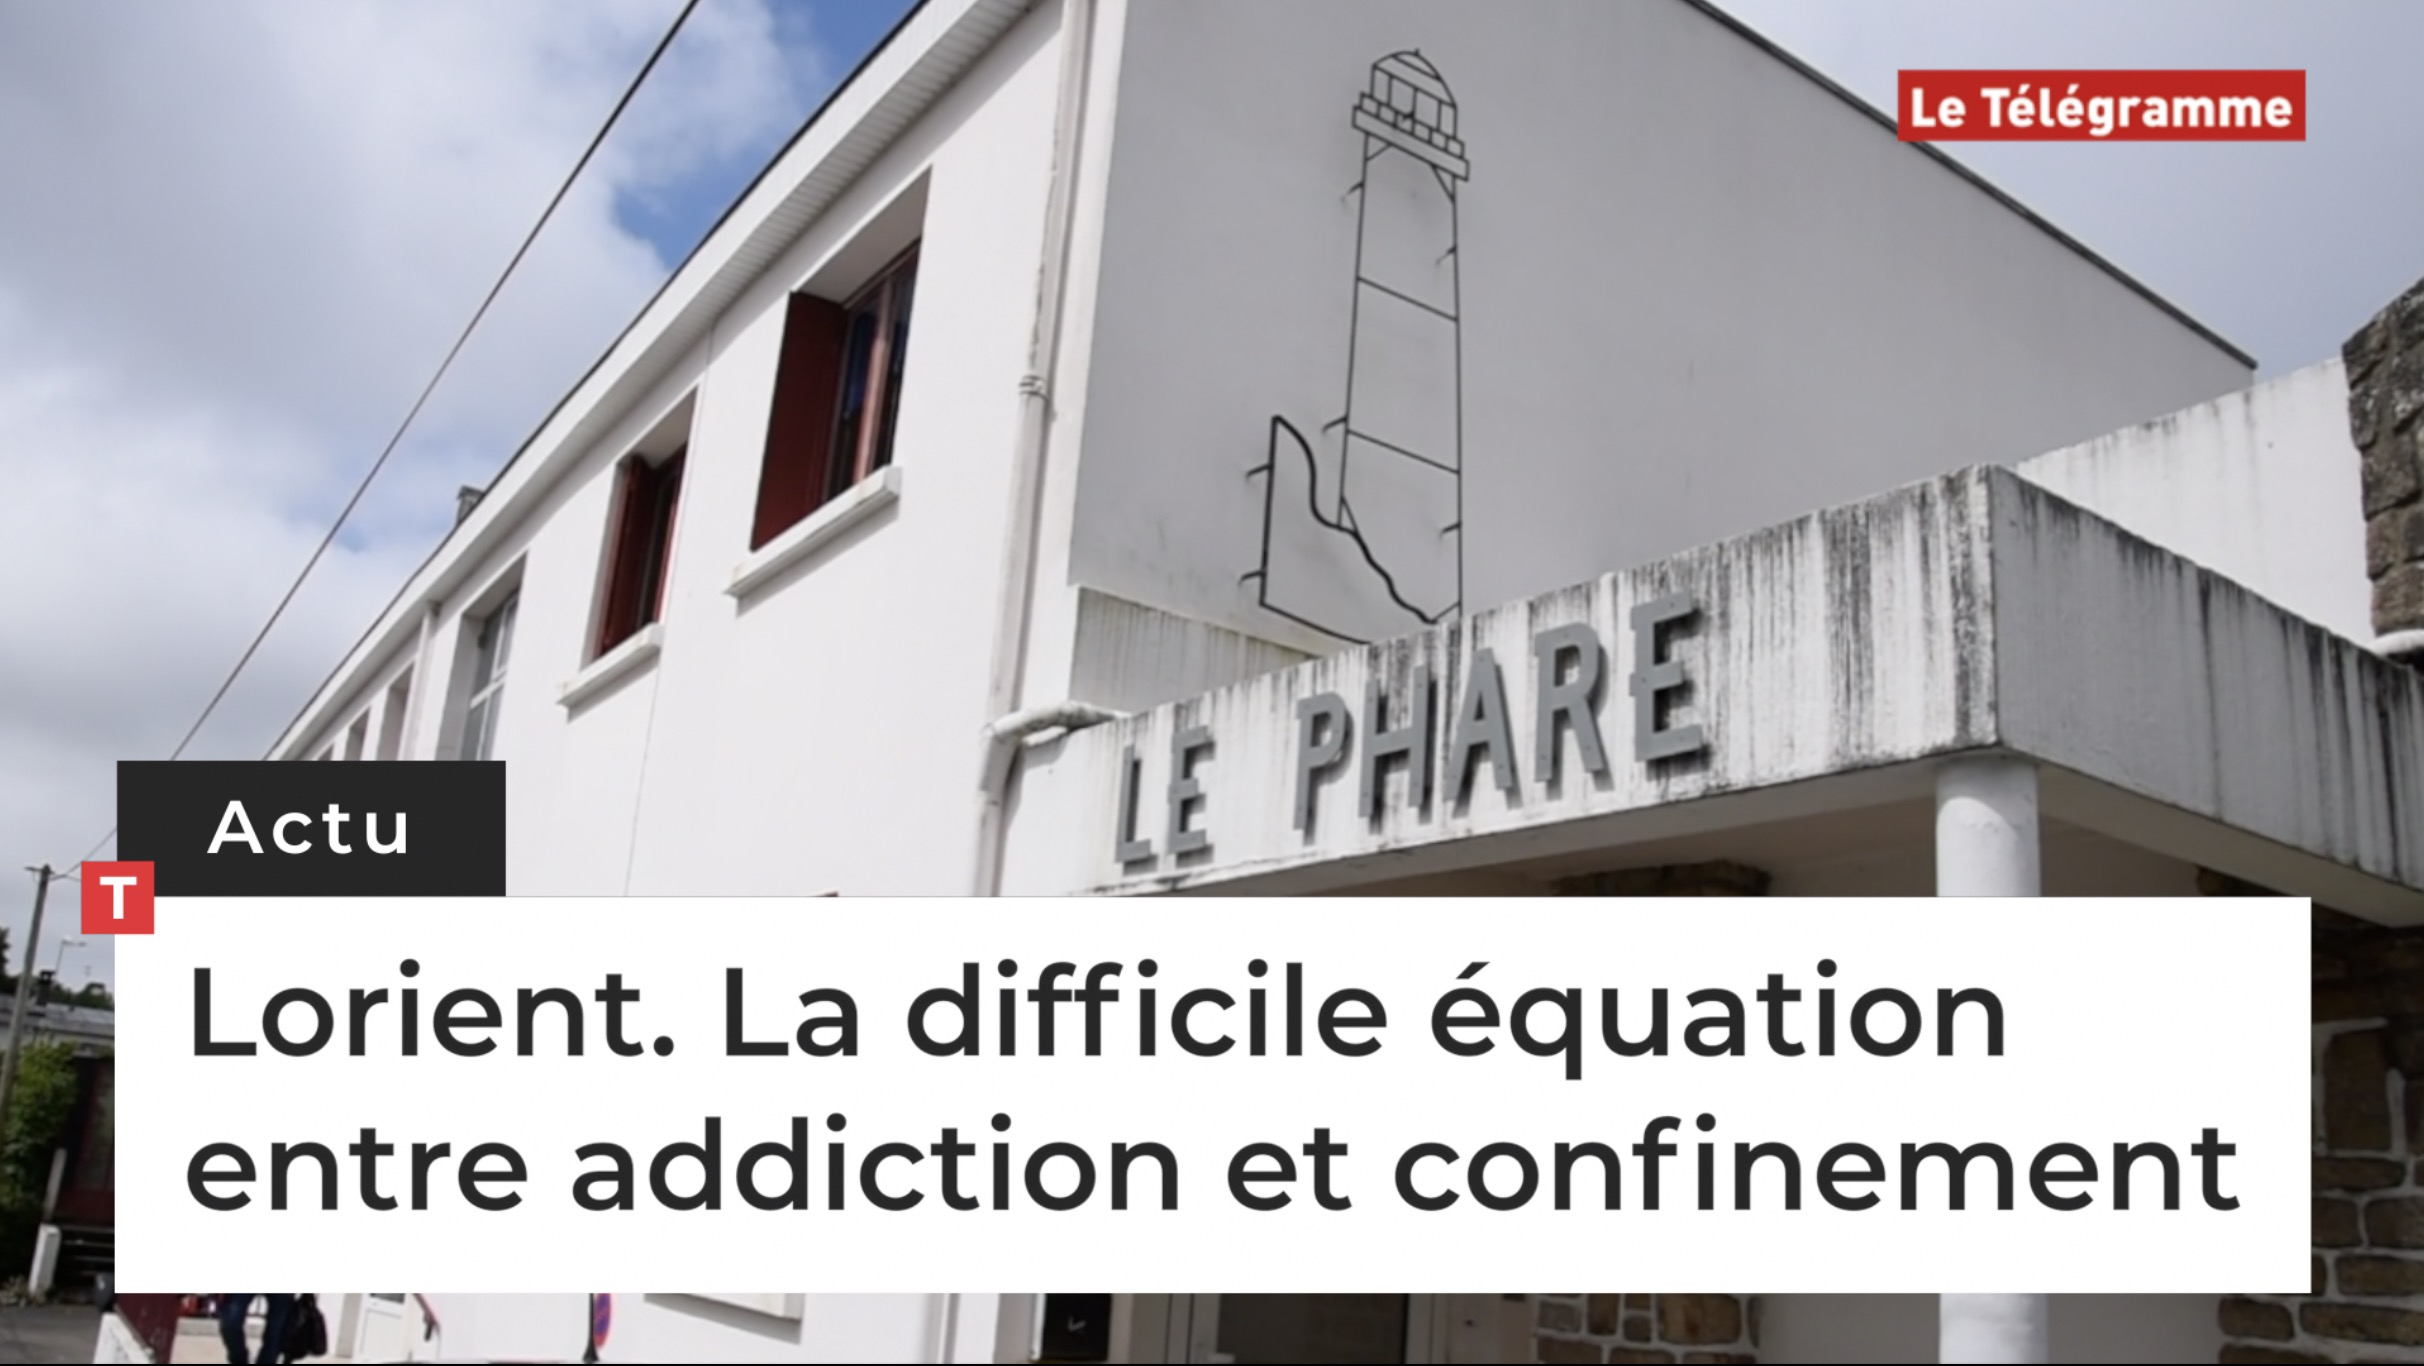 Lorient. La difficile équation entre addiction et confinement (Le Télégramme)